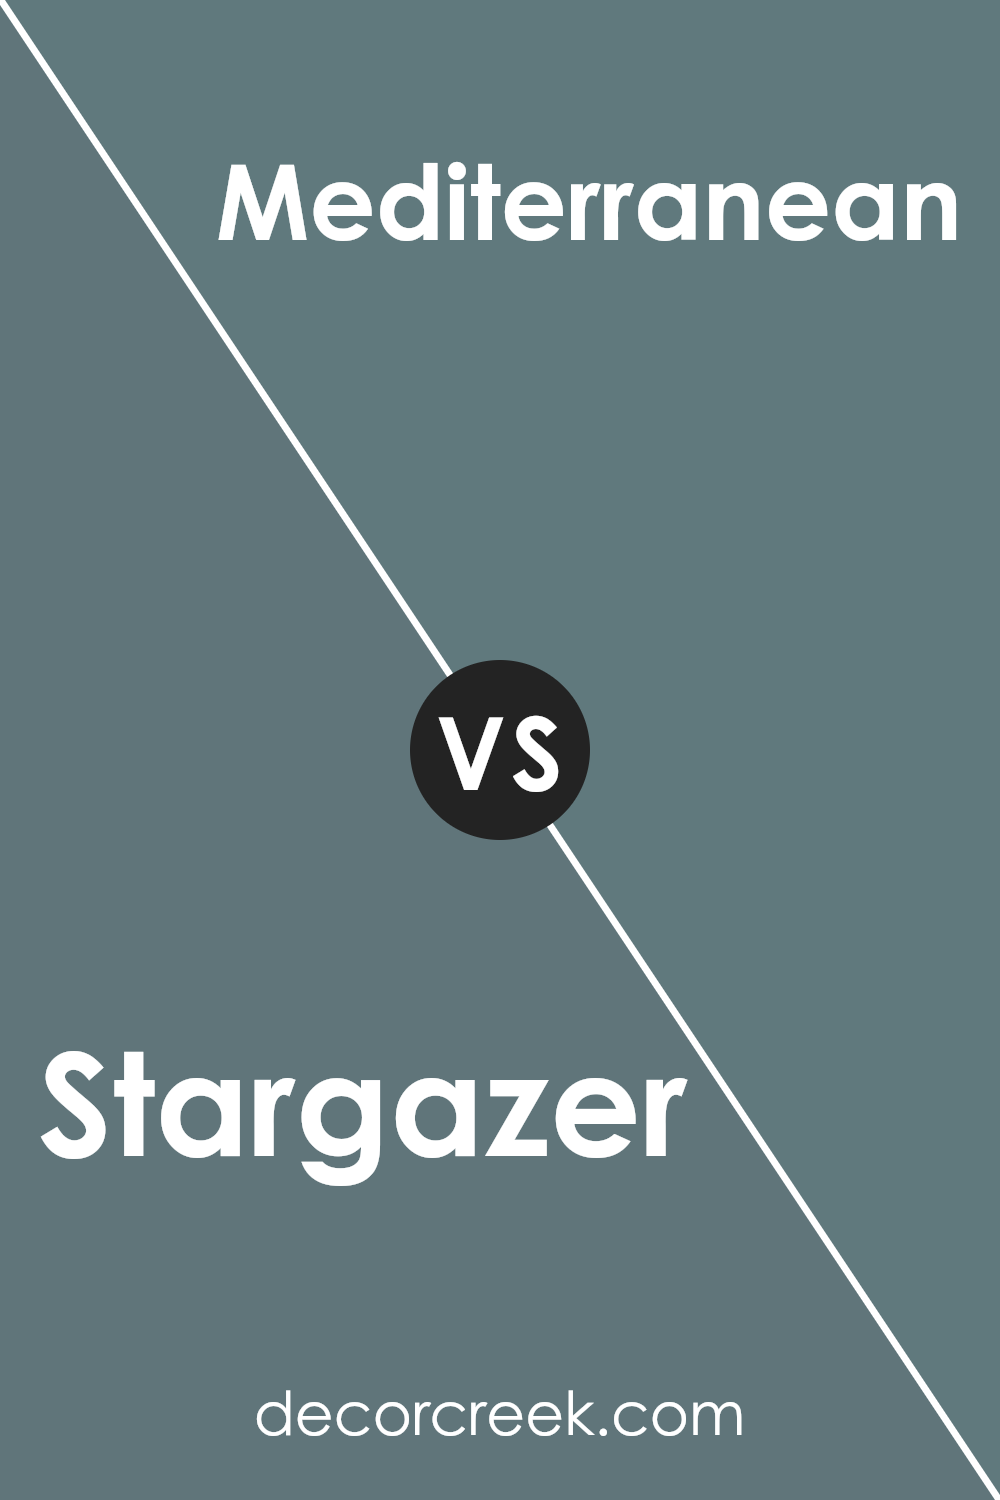 stargazer_sw_9635_vs_mediterranean_sw_7617